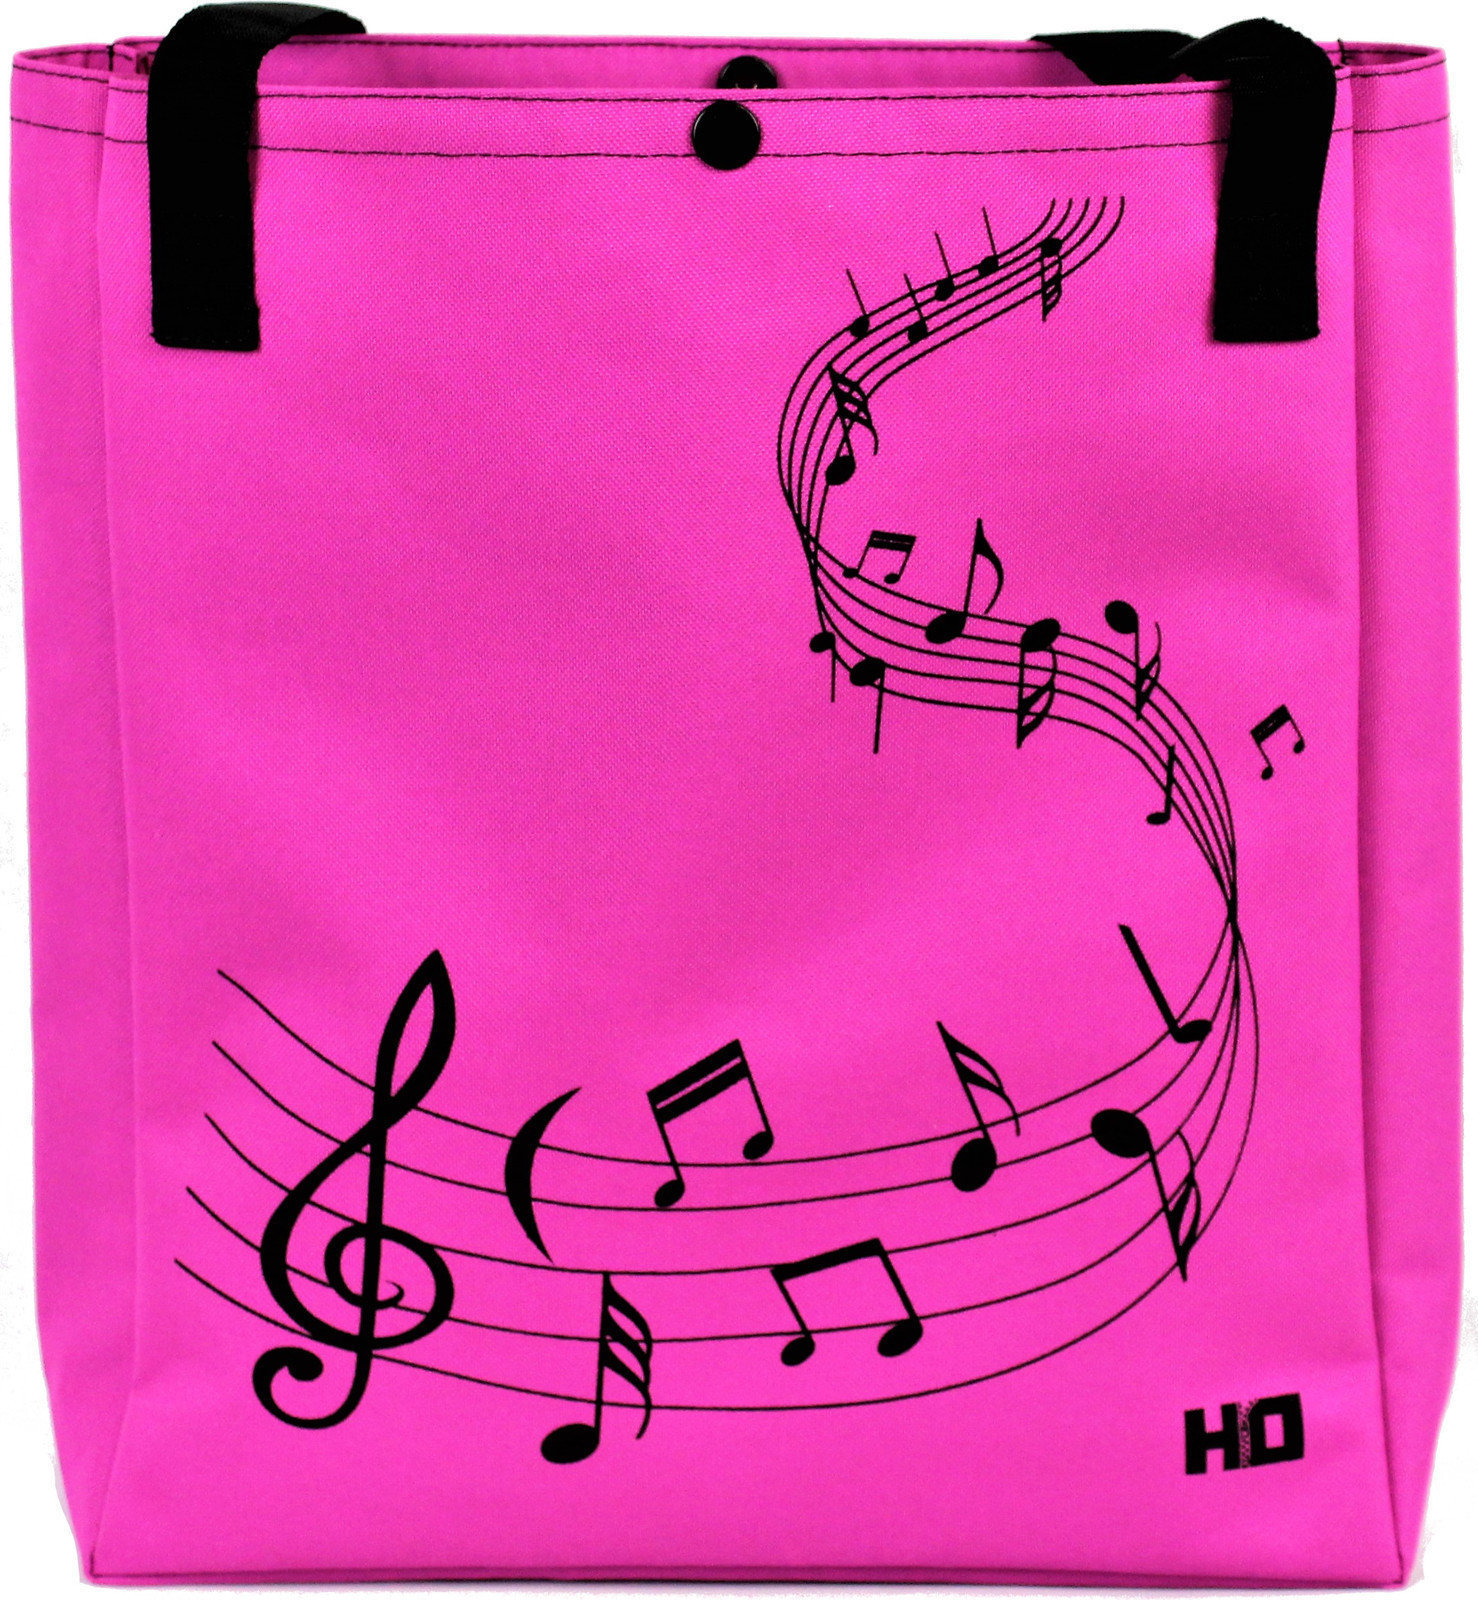 Bolsa de compras Hudební Obaly H-O TNKLL122 Melody Negro-Pink